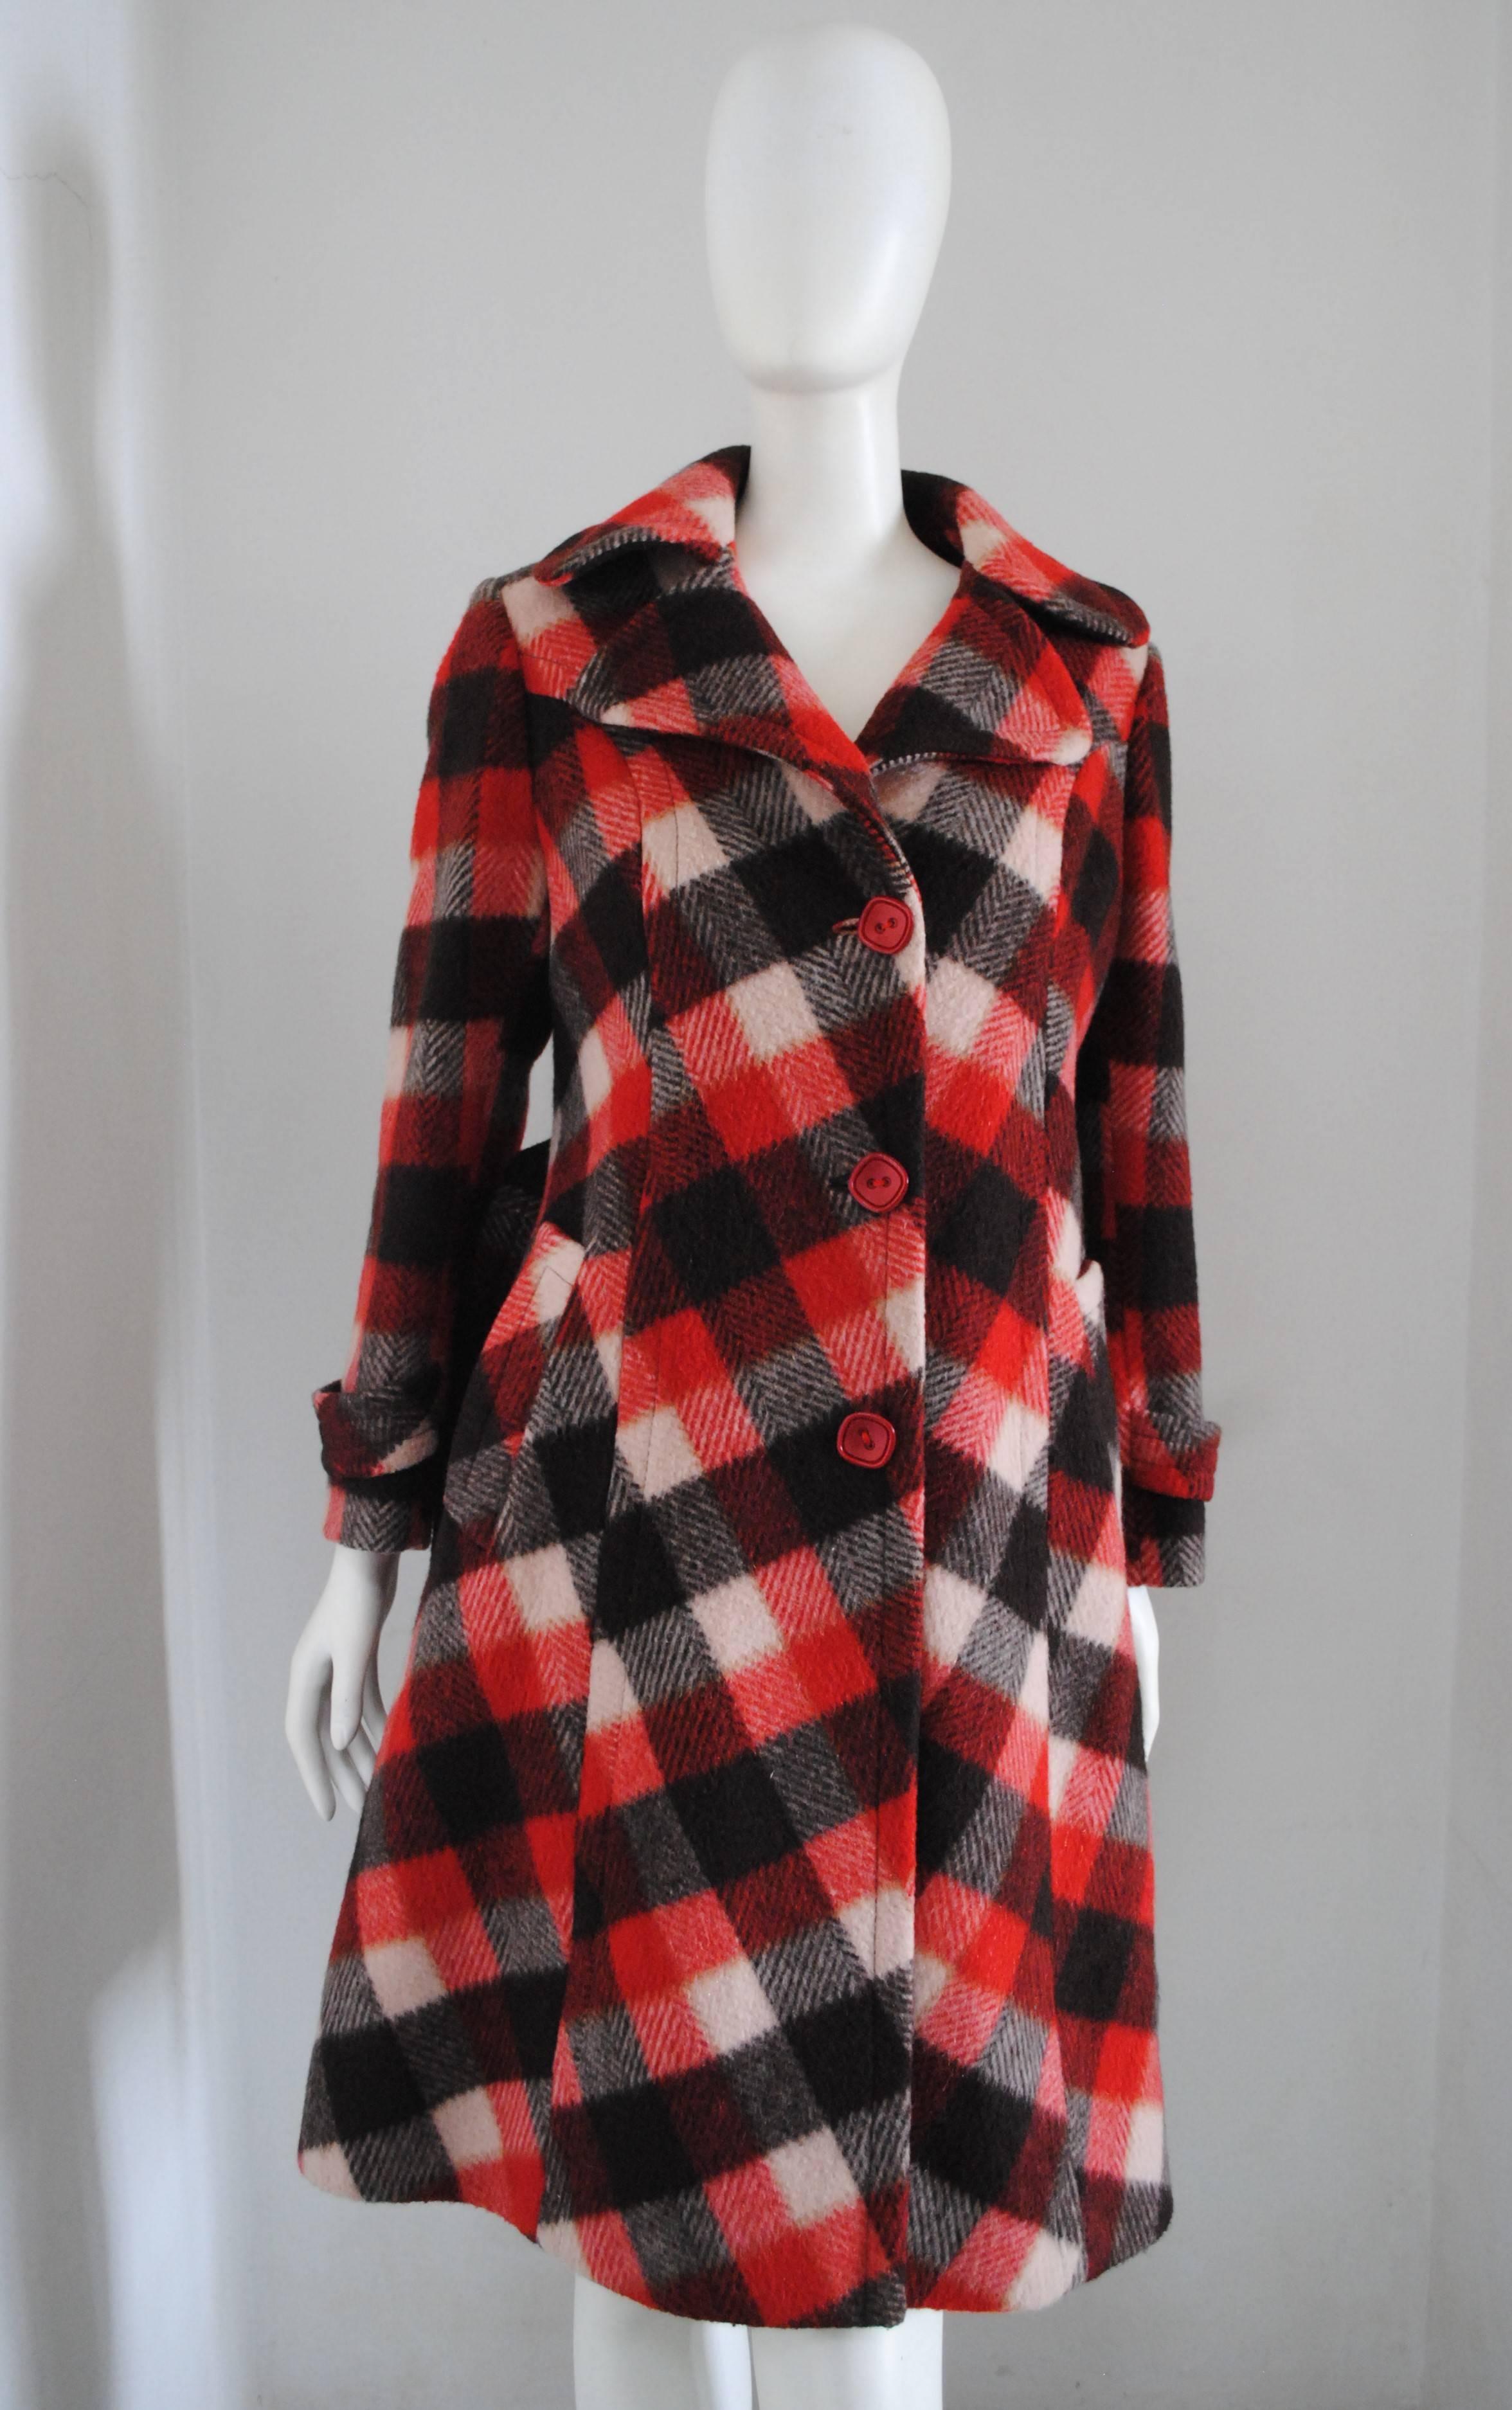 Manteau vintage multicolore  

Totalement fabriqué en Italie en taille M 

3 fonds rouges
2 tâches et une ceinture de taille



